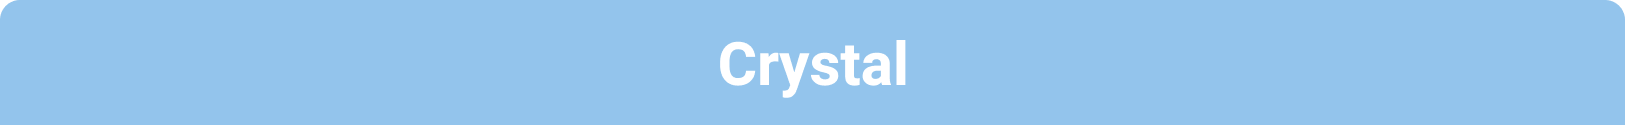 Crystal Onboarding Package